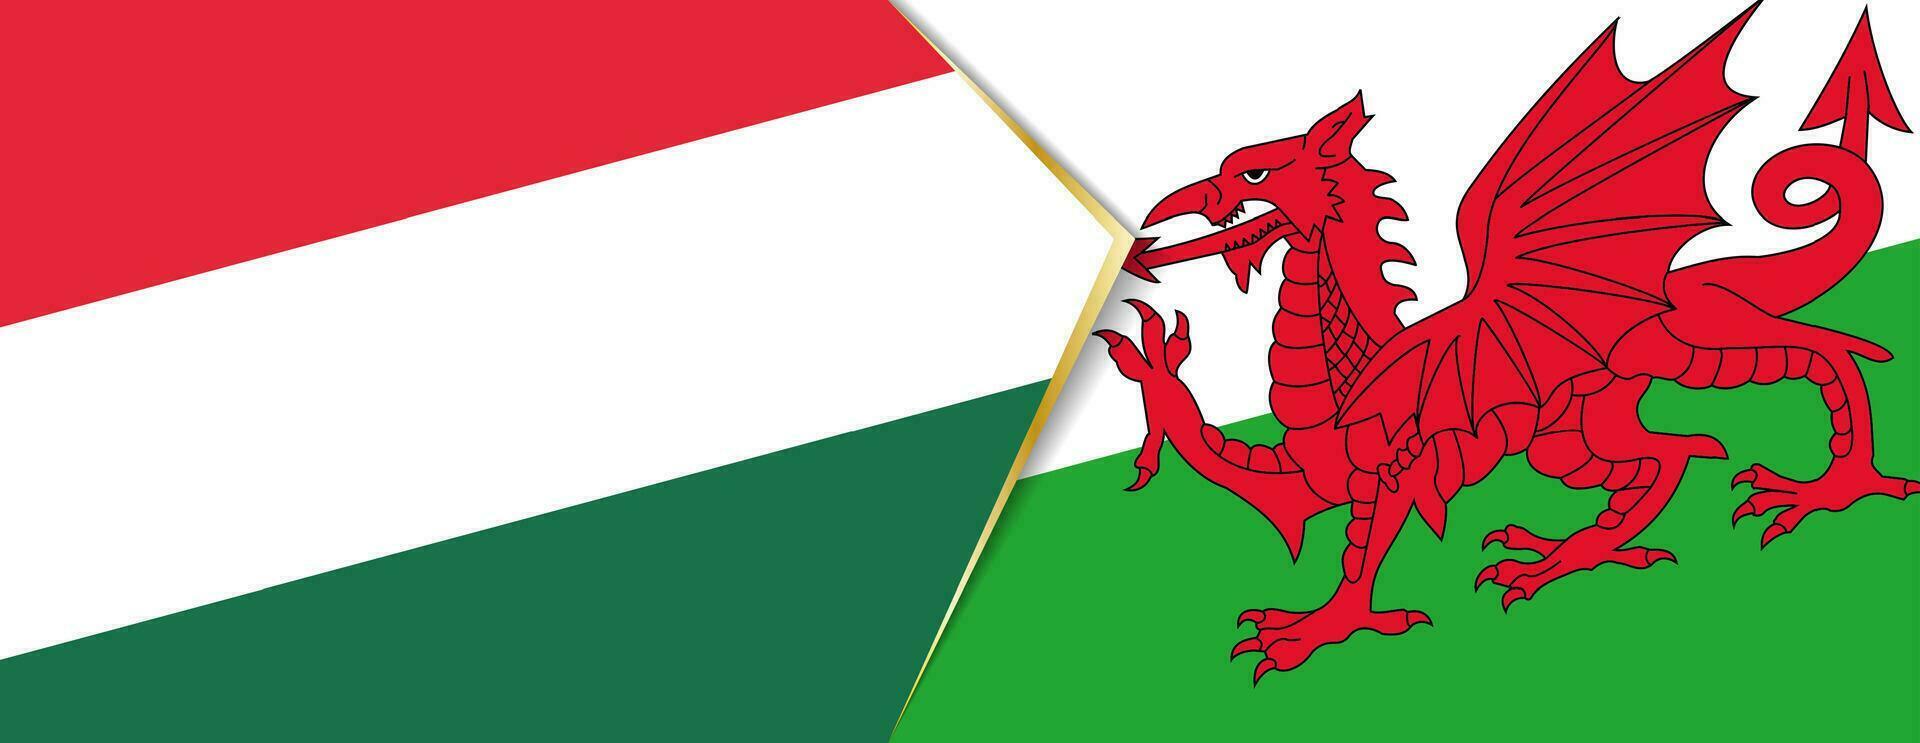 Ungarn und Wales Flaggen, zwei Vektor Flaggen.